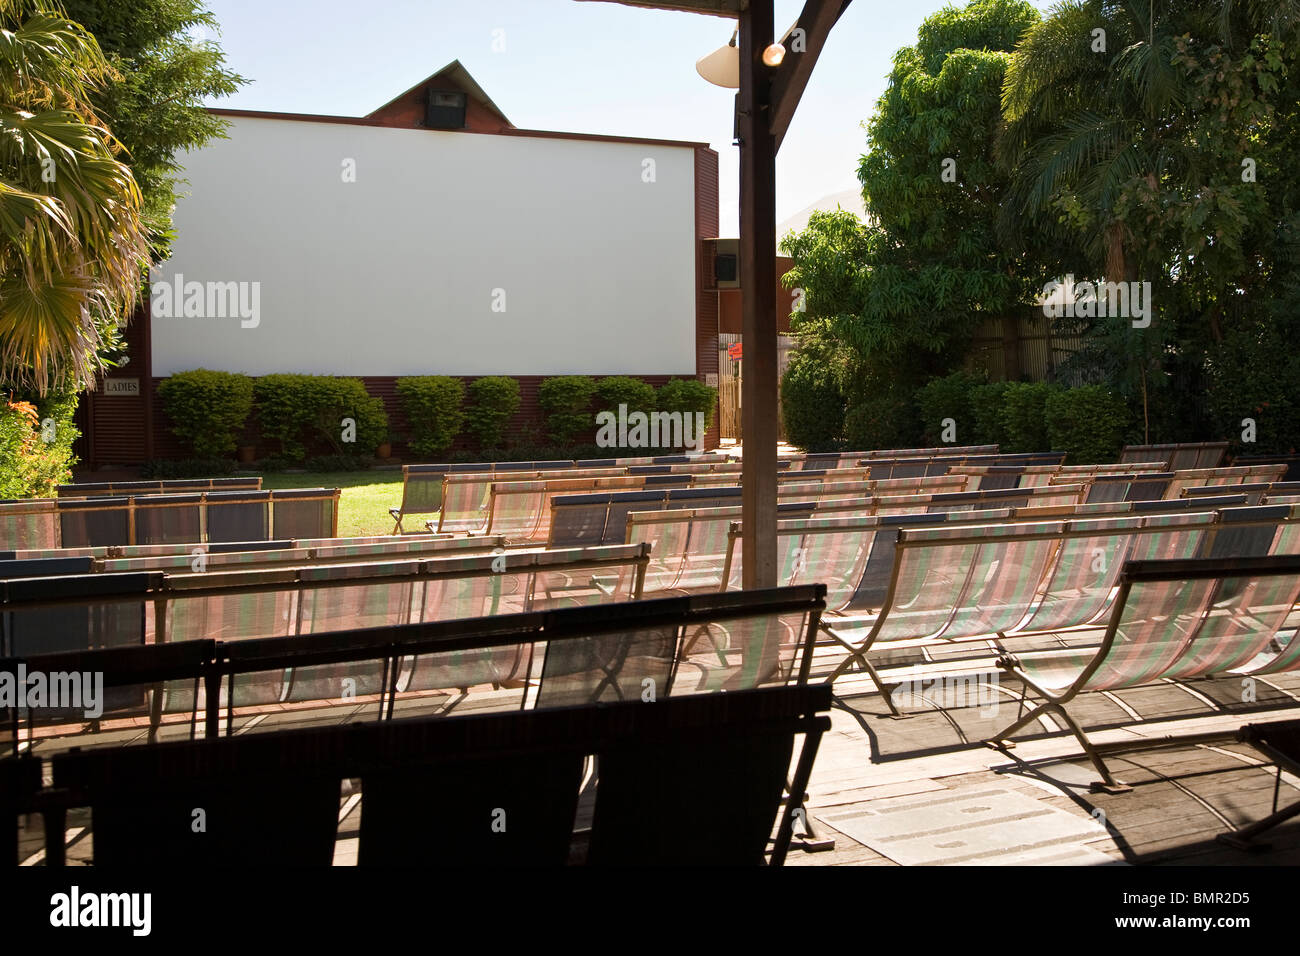 Rödertor Sonne Bild Gärten gilt als der weltweit älteste Outdoor-Kino Broome Western Australia Stockfoto